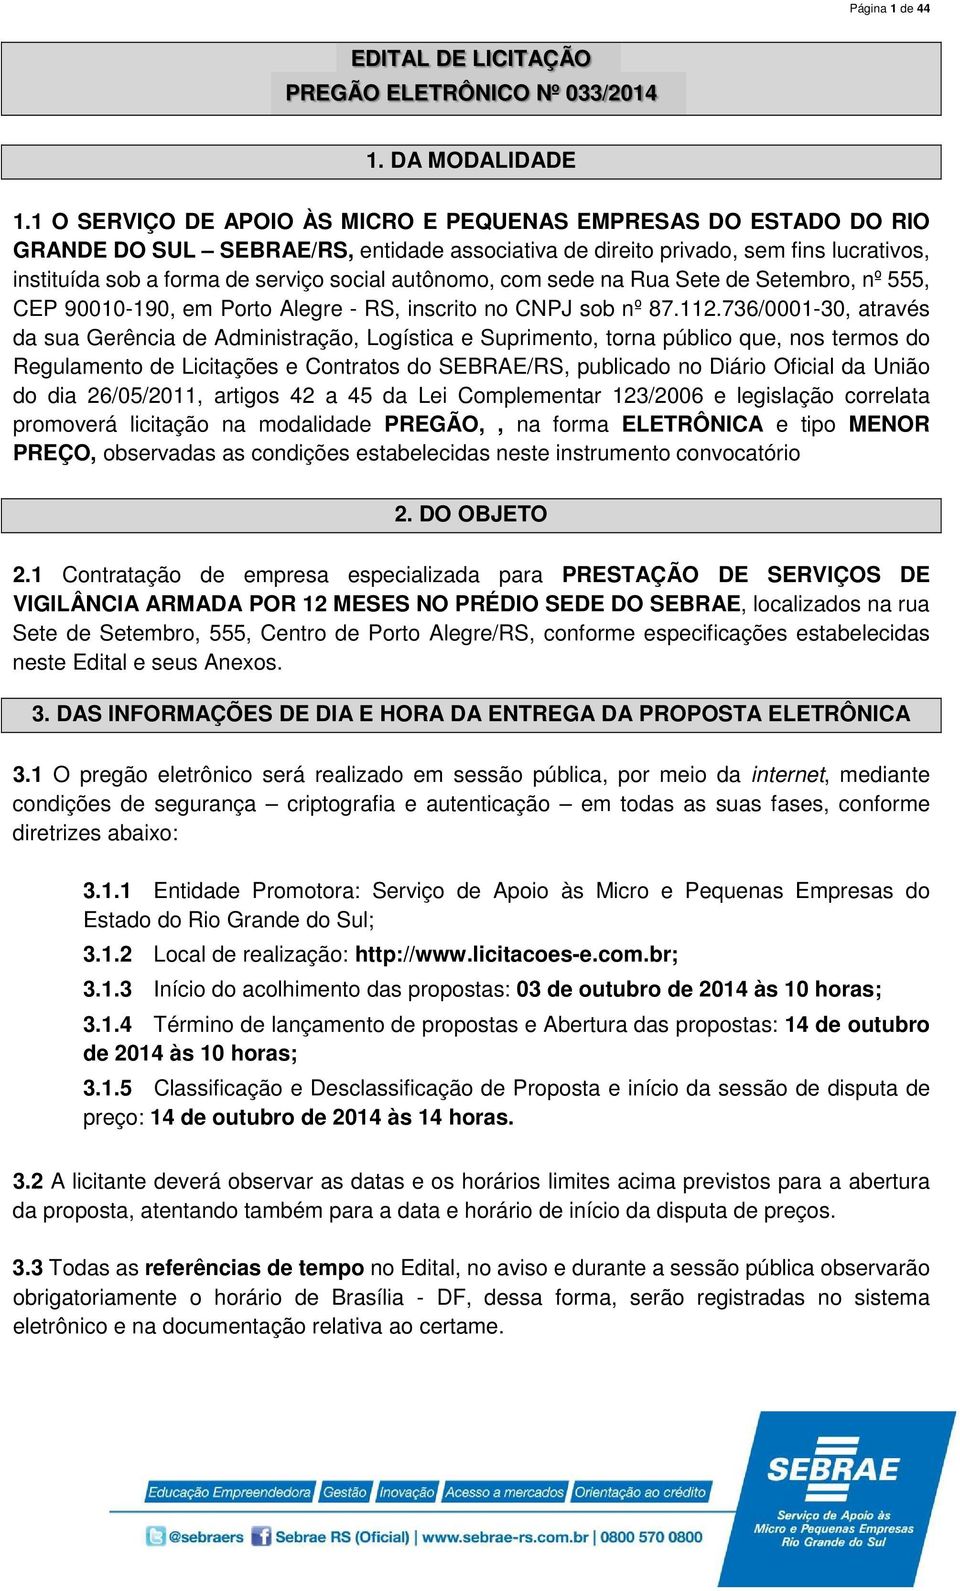 autônomo, com sede na Rua Sete de Setembro, nº 555, CEP 90010-190, em Porto Alegre - RS, inscrito no CNPJ sob nº 87.112.